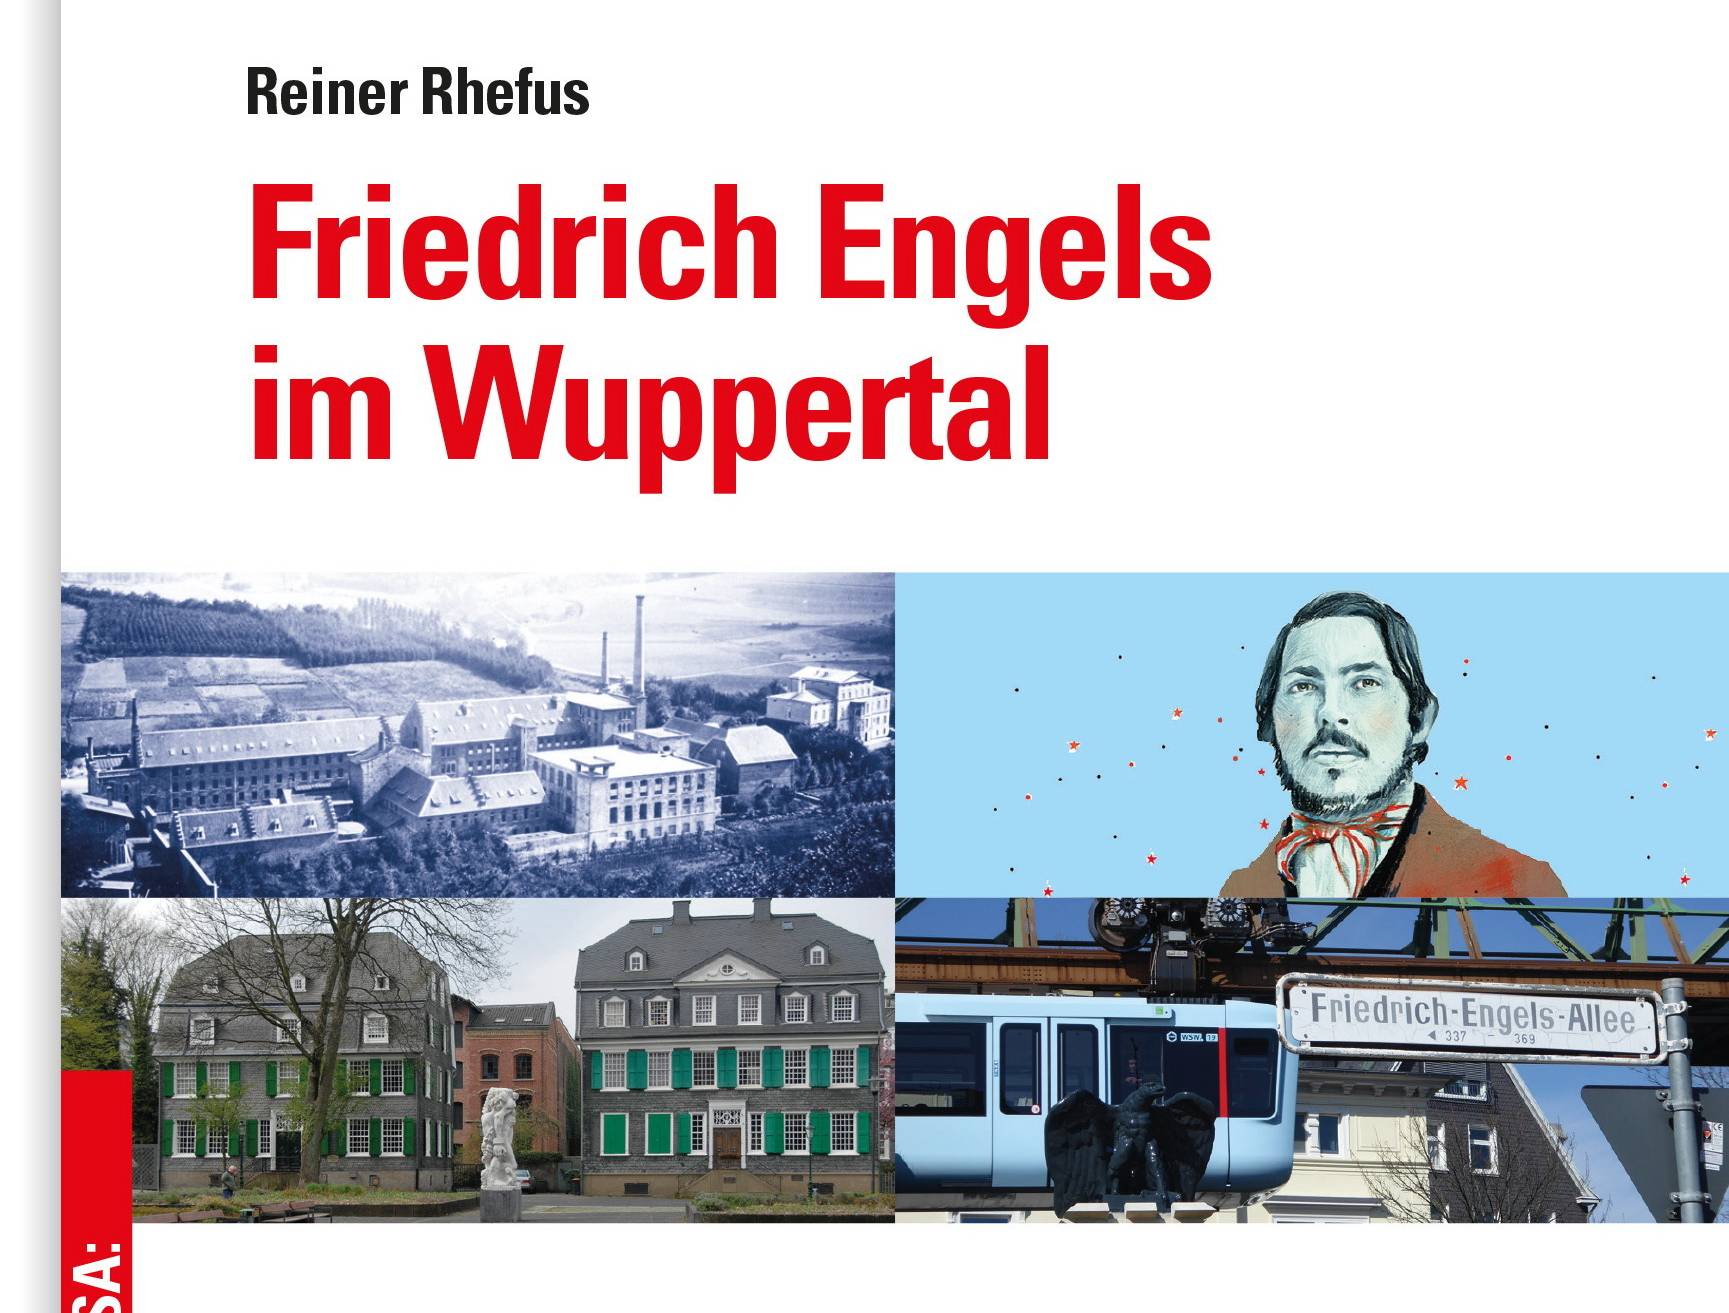 Reiner Rhefus’ neues Engels-Buch ist im